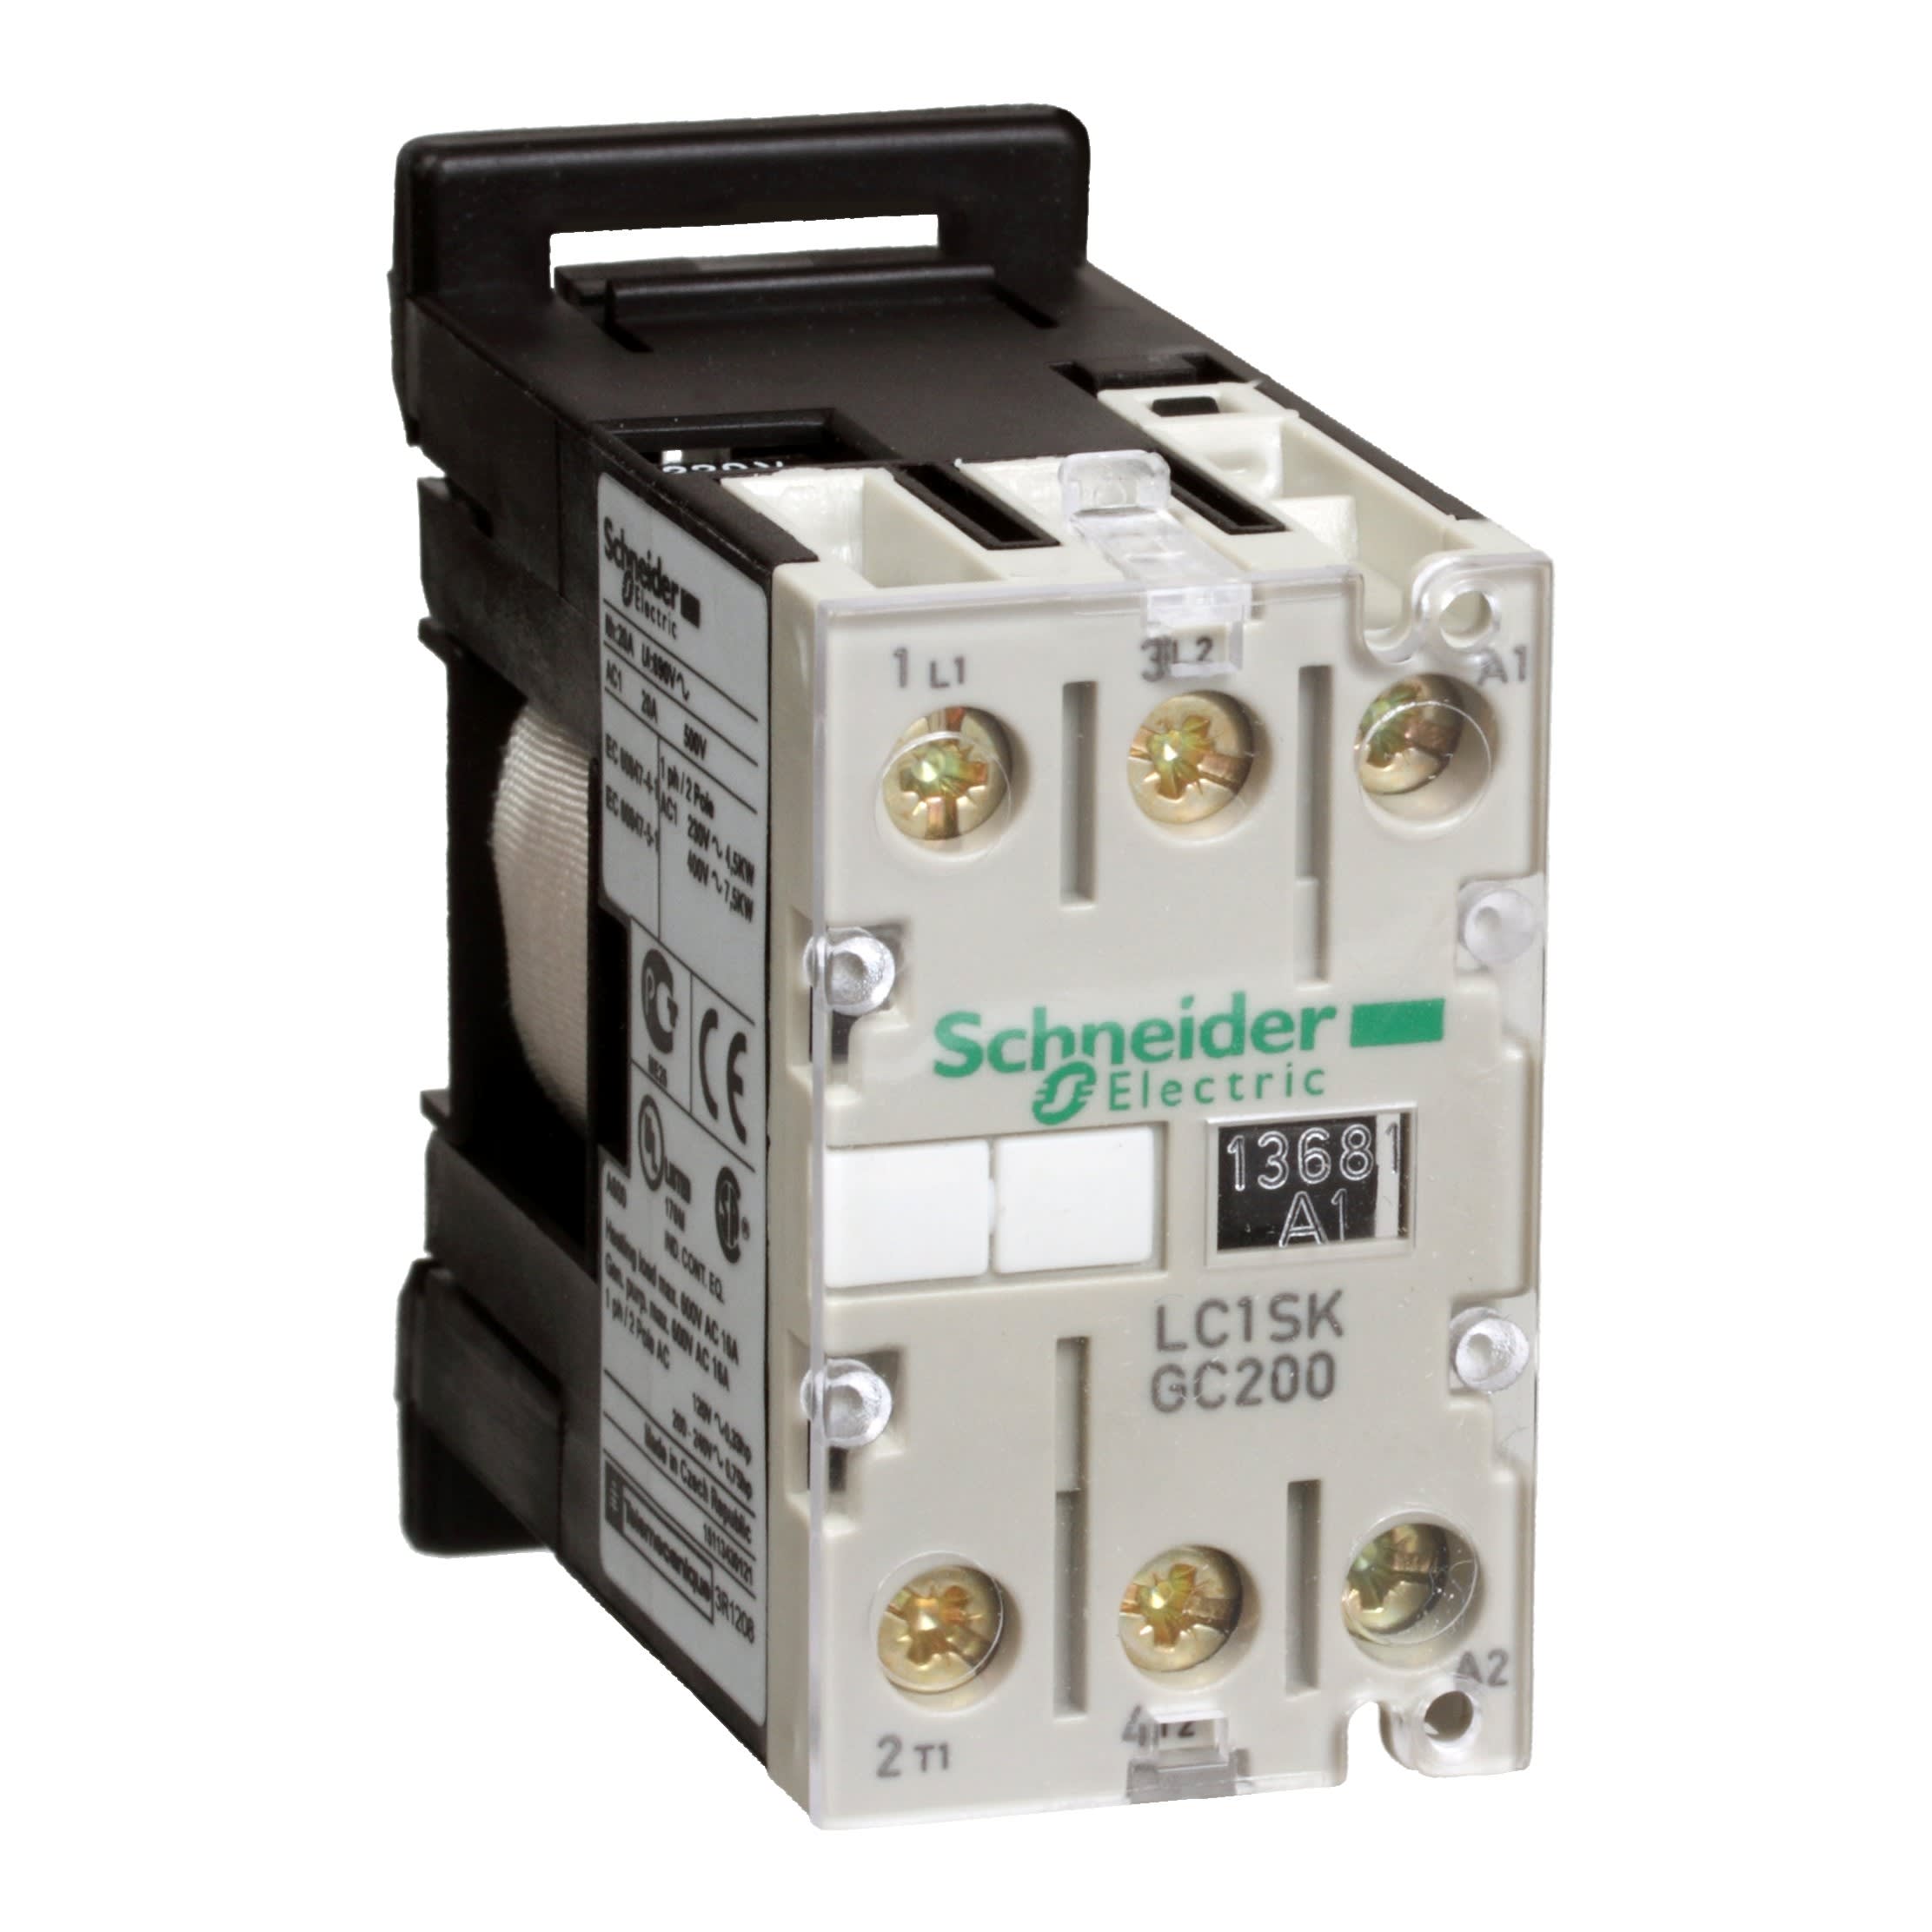 Schneider Electric - TeSys LC1SK - contacteur - 2P - AC-3 400V 5A - bobine 24Vca